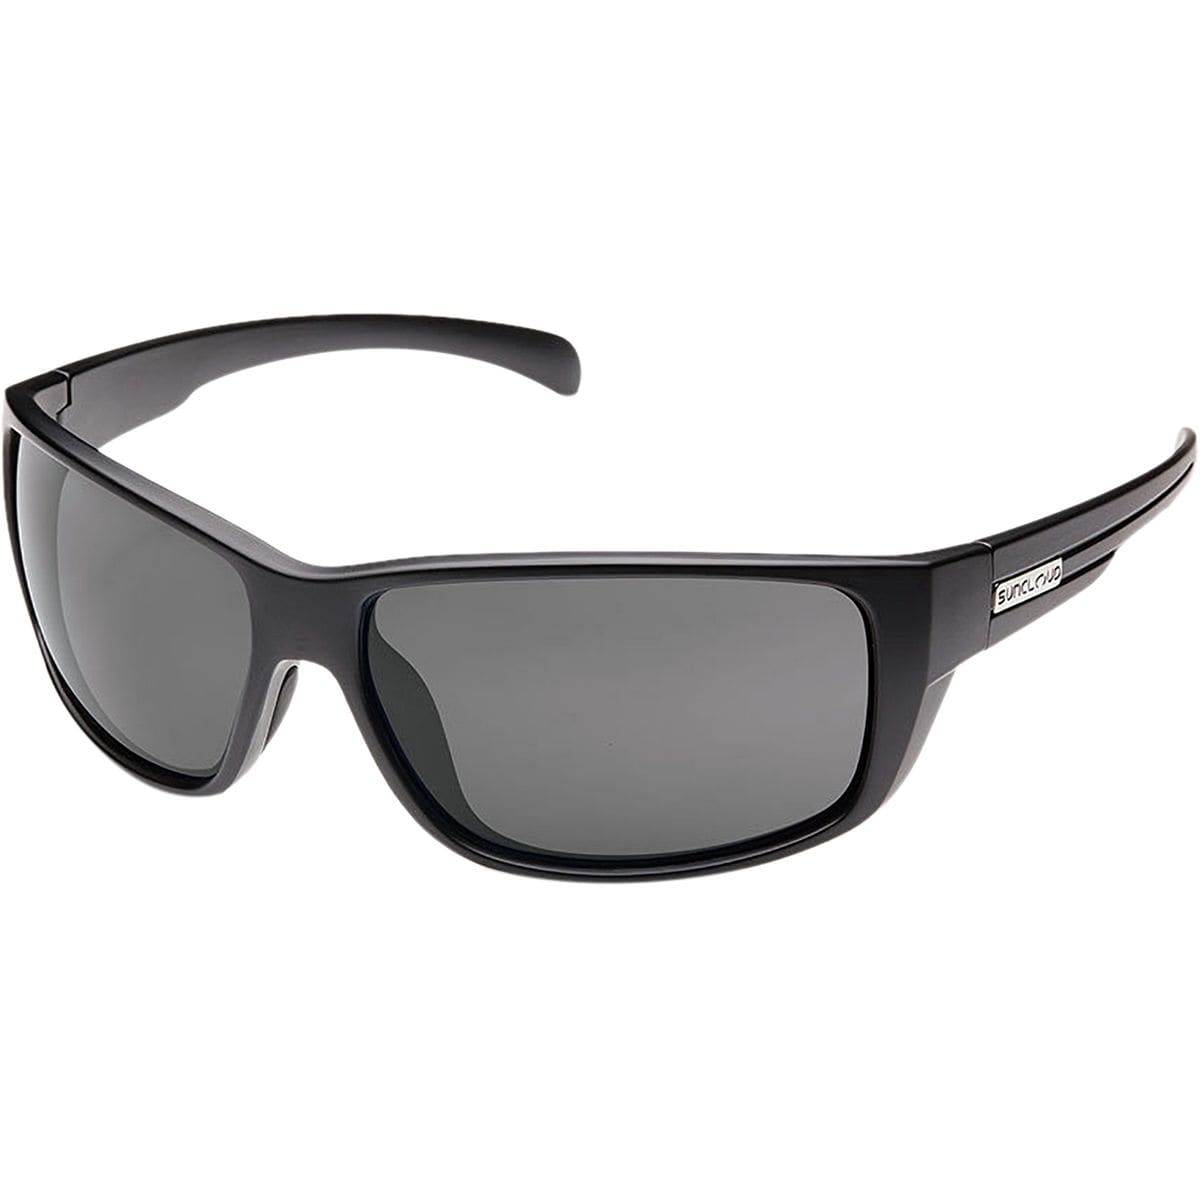 Поляризационные солнцезащитные очки milestone Suncloud Polarized Optics, цвет matte black/gray